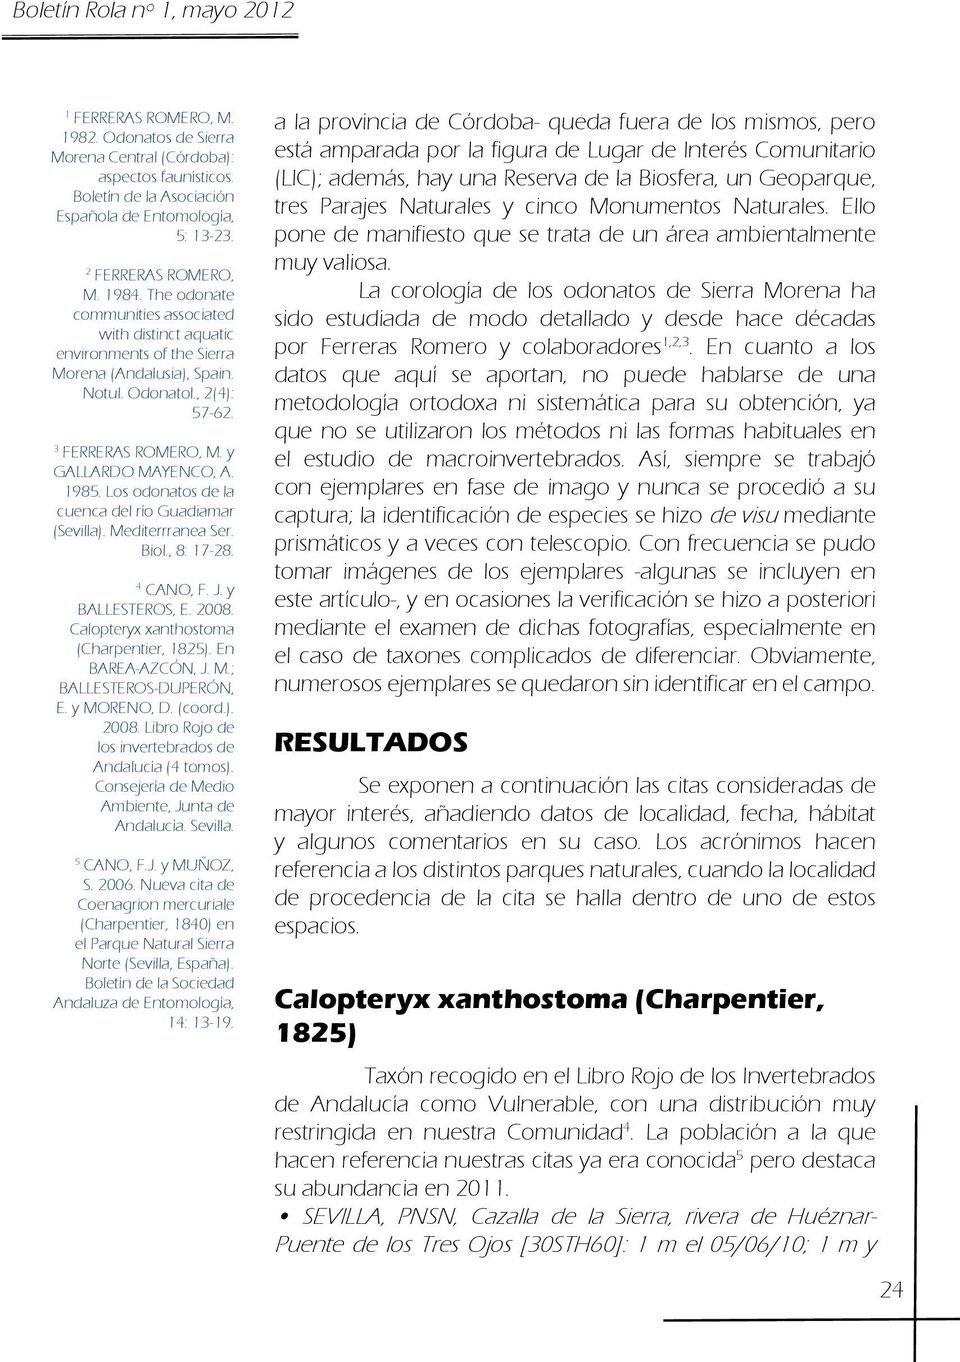 Los odonatos de la cuenca del río Guadiamar (Sevilla). Mediterrranea Ser. Biol., 8: 17-28. 4 CANO, F. J. y BALLESTEROS, E. 2008. Calopteryx xanthostoma (Charpentier, 1825). En BAREA-AZCÓN, J. M.; BALLESTEROS-DUPERÓN, E.